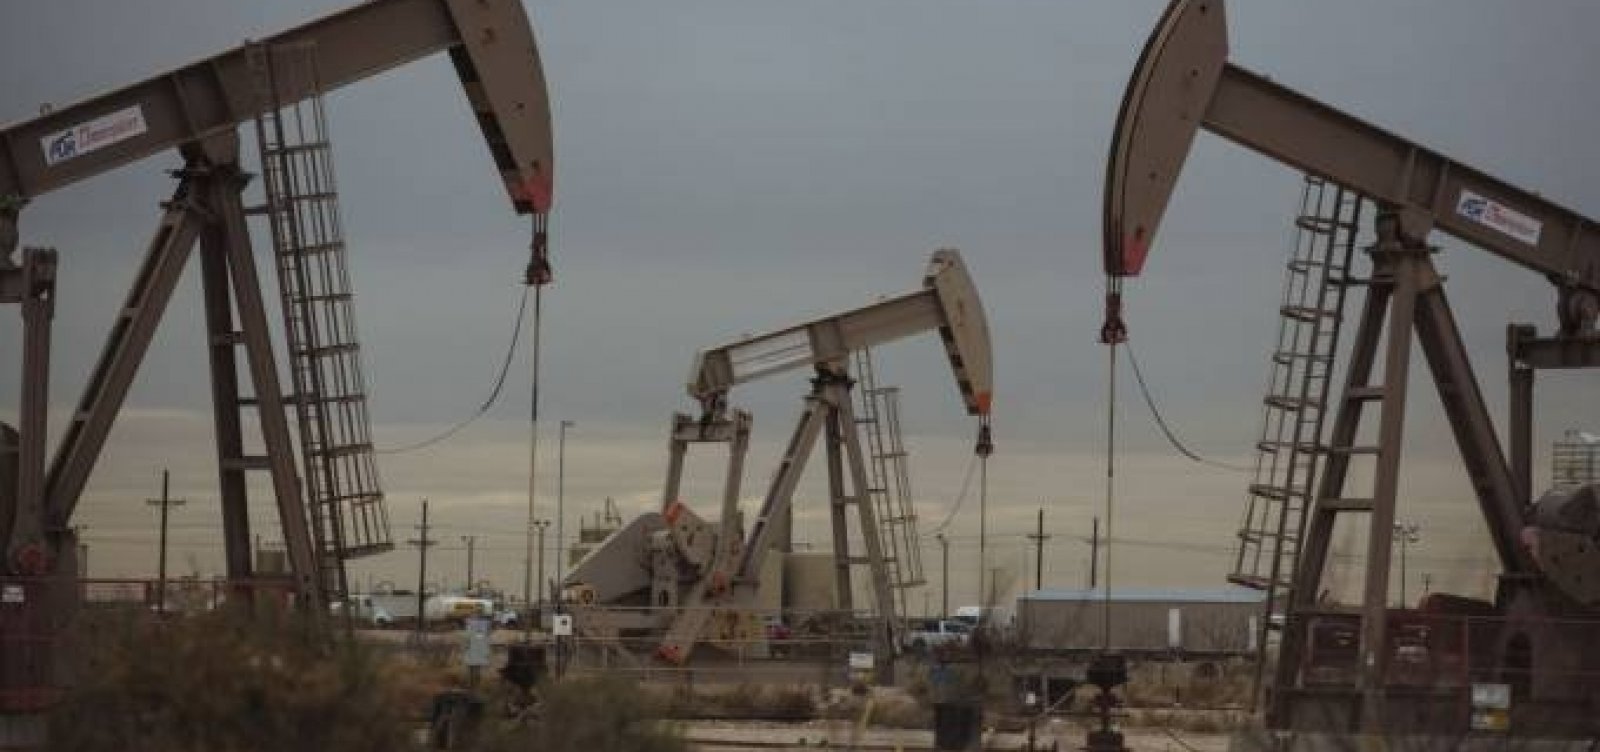 Após explosão em Beirute, preço do petróleo dispara no mercado internacional 